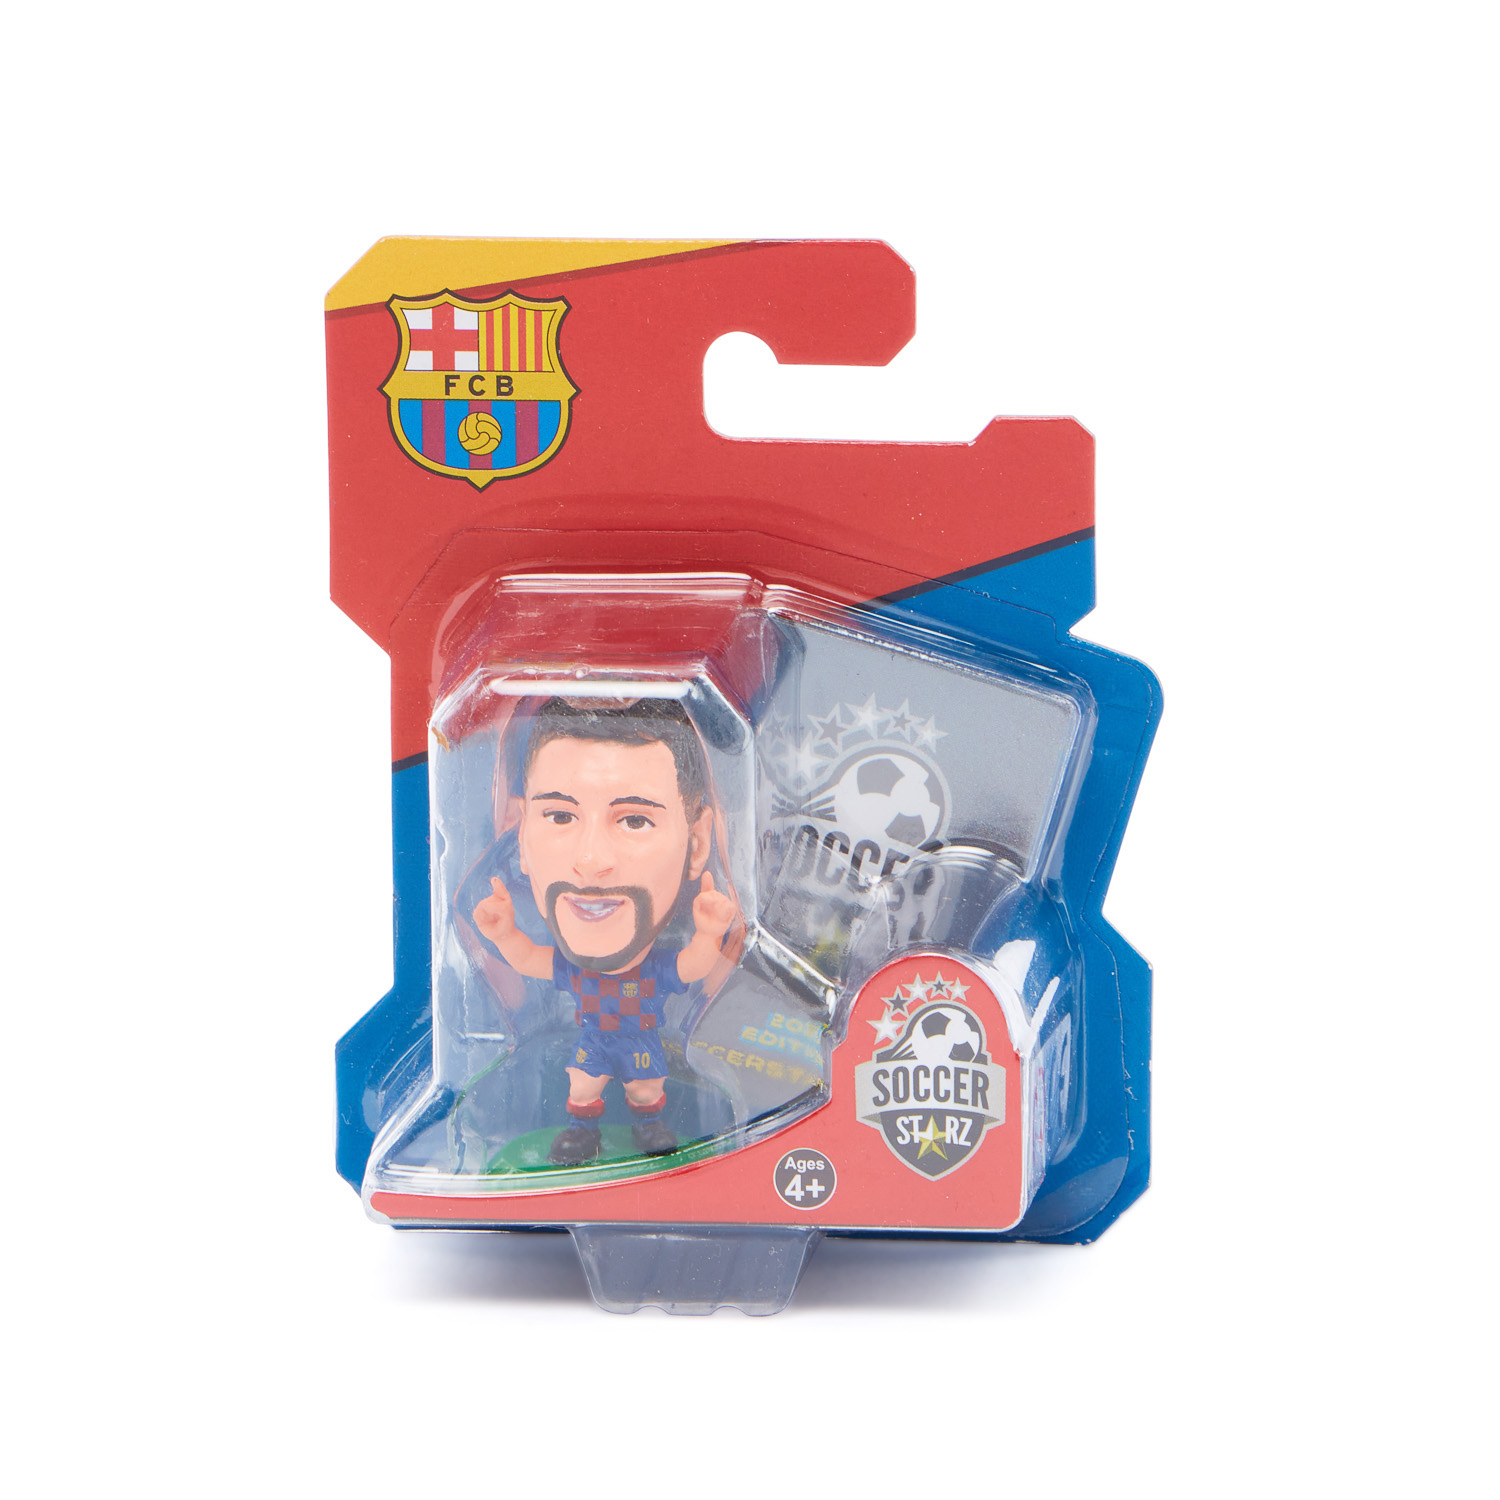 Official Licensed F.C Barcelona Messi - 2019 SoccerStarz Figure 